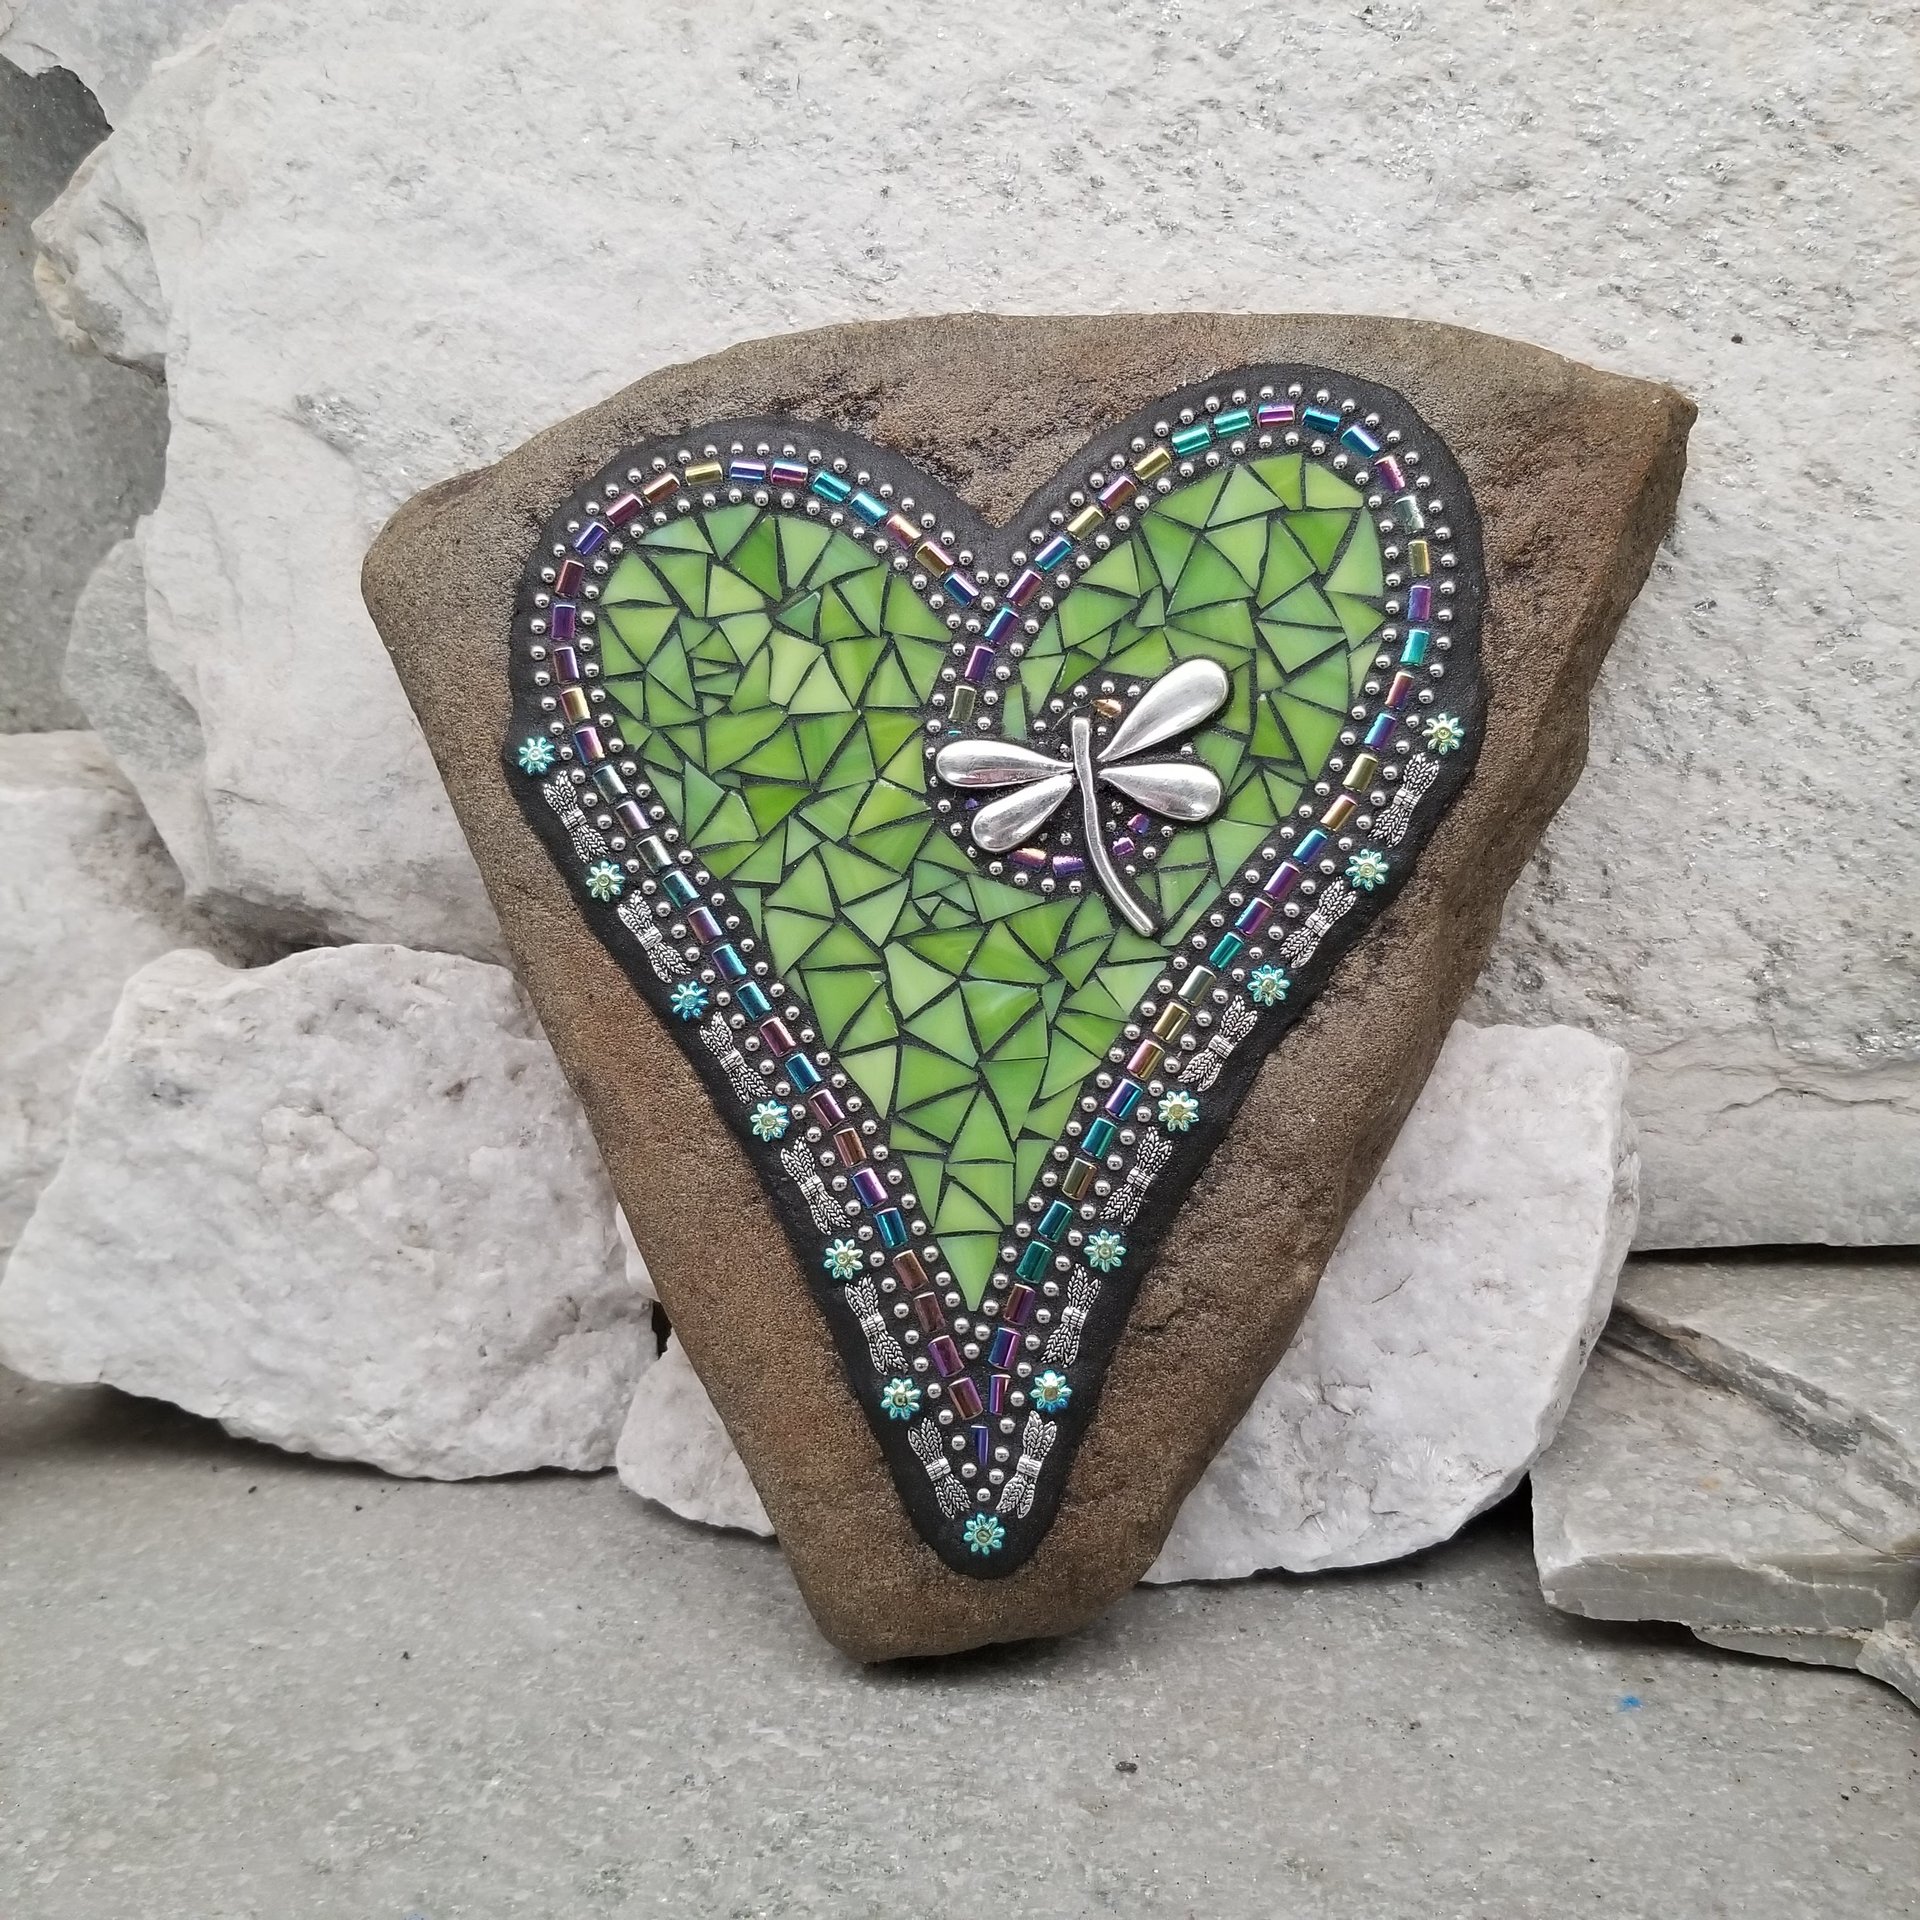 Lime Green Heart with Dragonfly, Garden Stone, Mosaic, Garden Decor